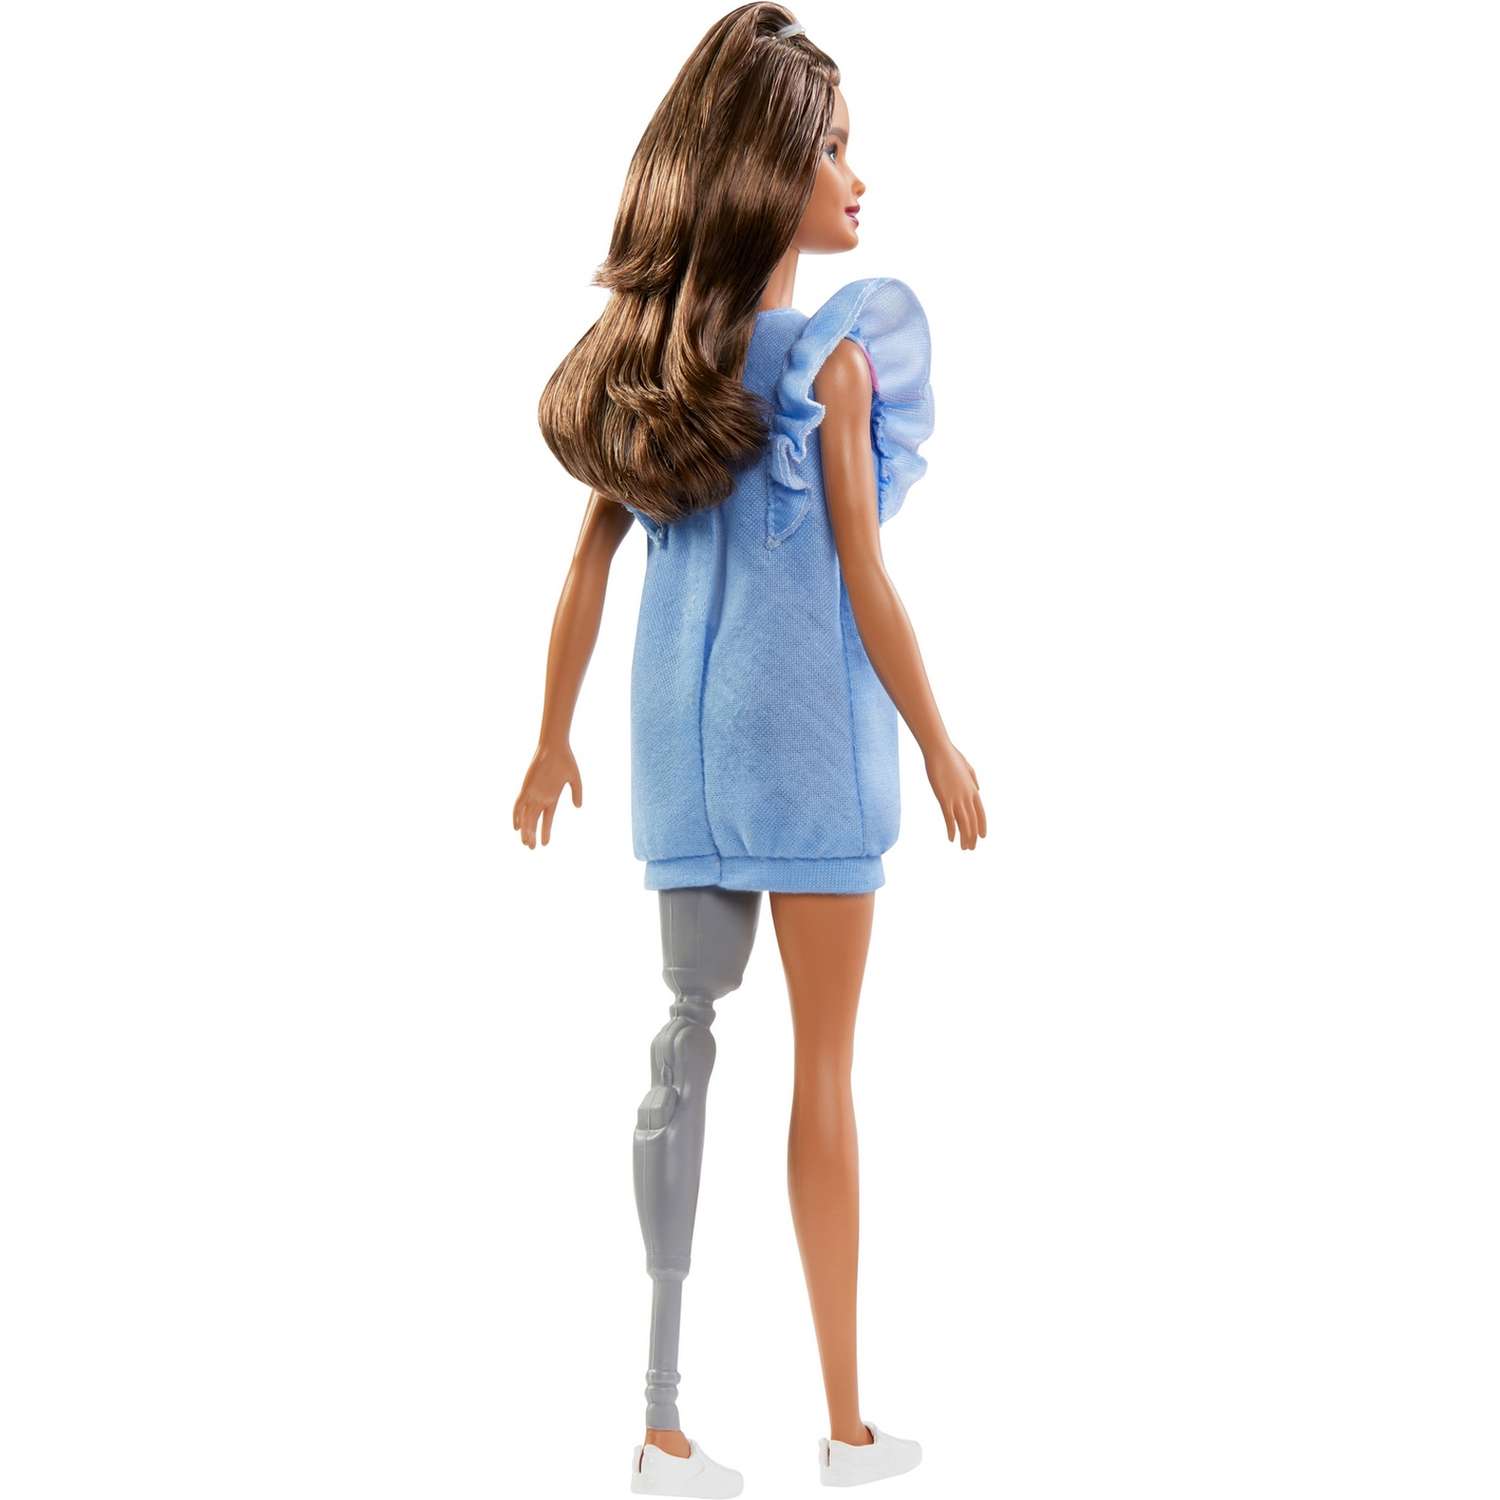 Кукла Barbie Игра с модой 121 Брюнетка с протезом в голубом платье FXL54 FBR37 - фото 5